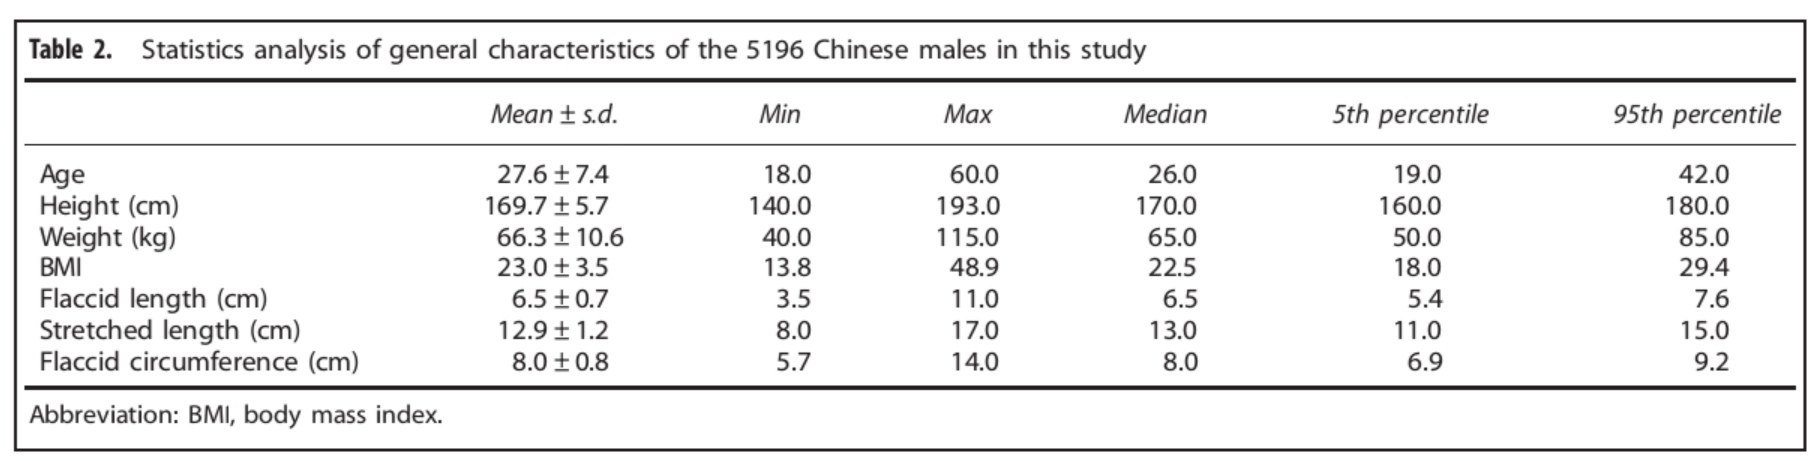 上图提示的是在统计的5196名中国男性阴茎的自然长度和拉伸长度以及